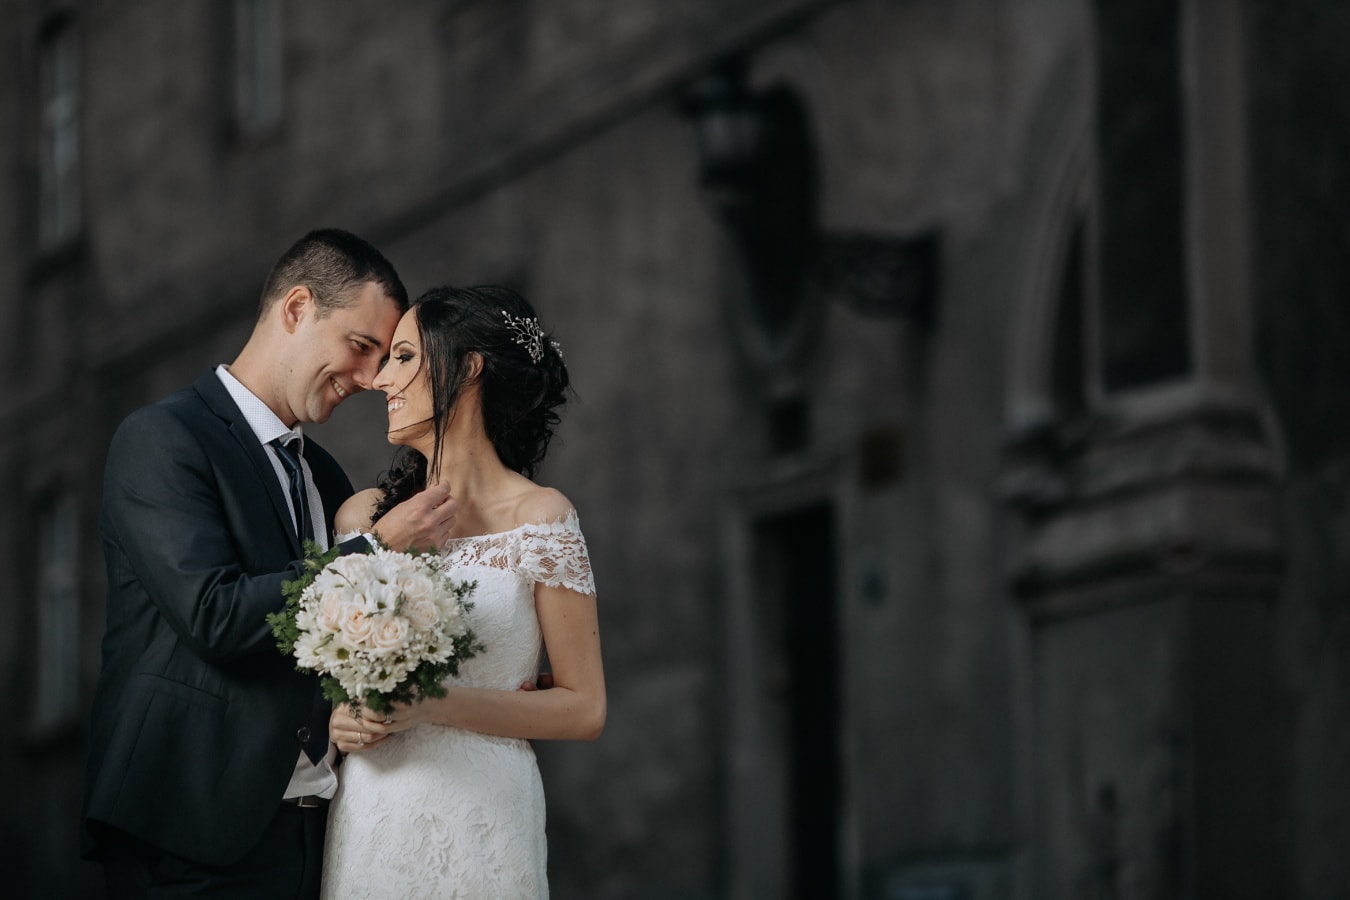 romantische, Hochzeit, Fotografie, Kleid, Blumenstrauß, Bräutigam, Braut, Liebe, Ehe, paar